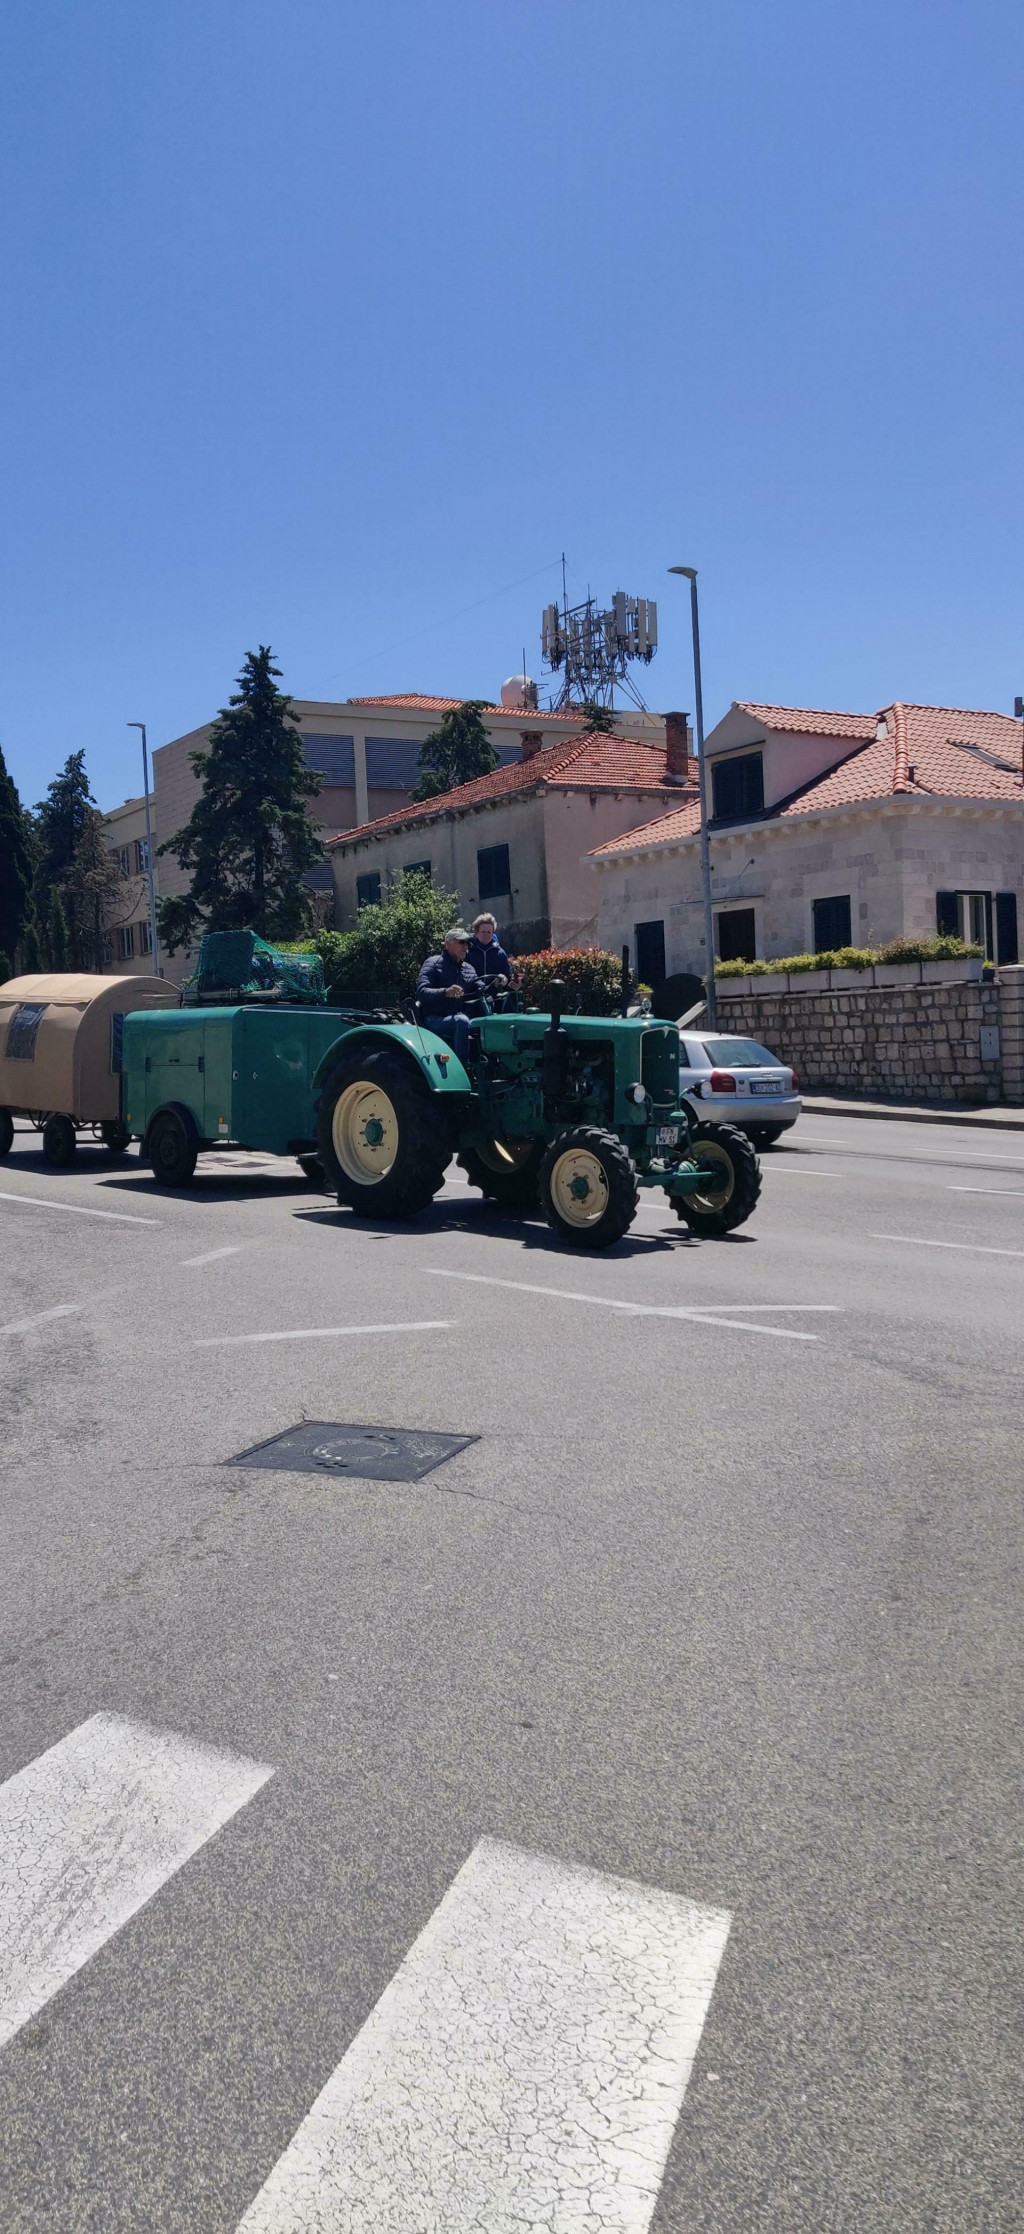 &lt;p&gt;Traktor s dvije prikolice na dubrovačkim ulicama&lt;/p&gt;